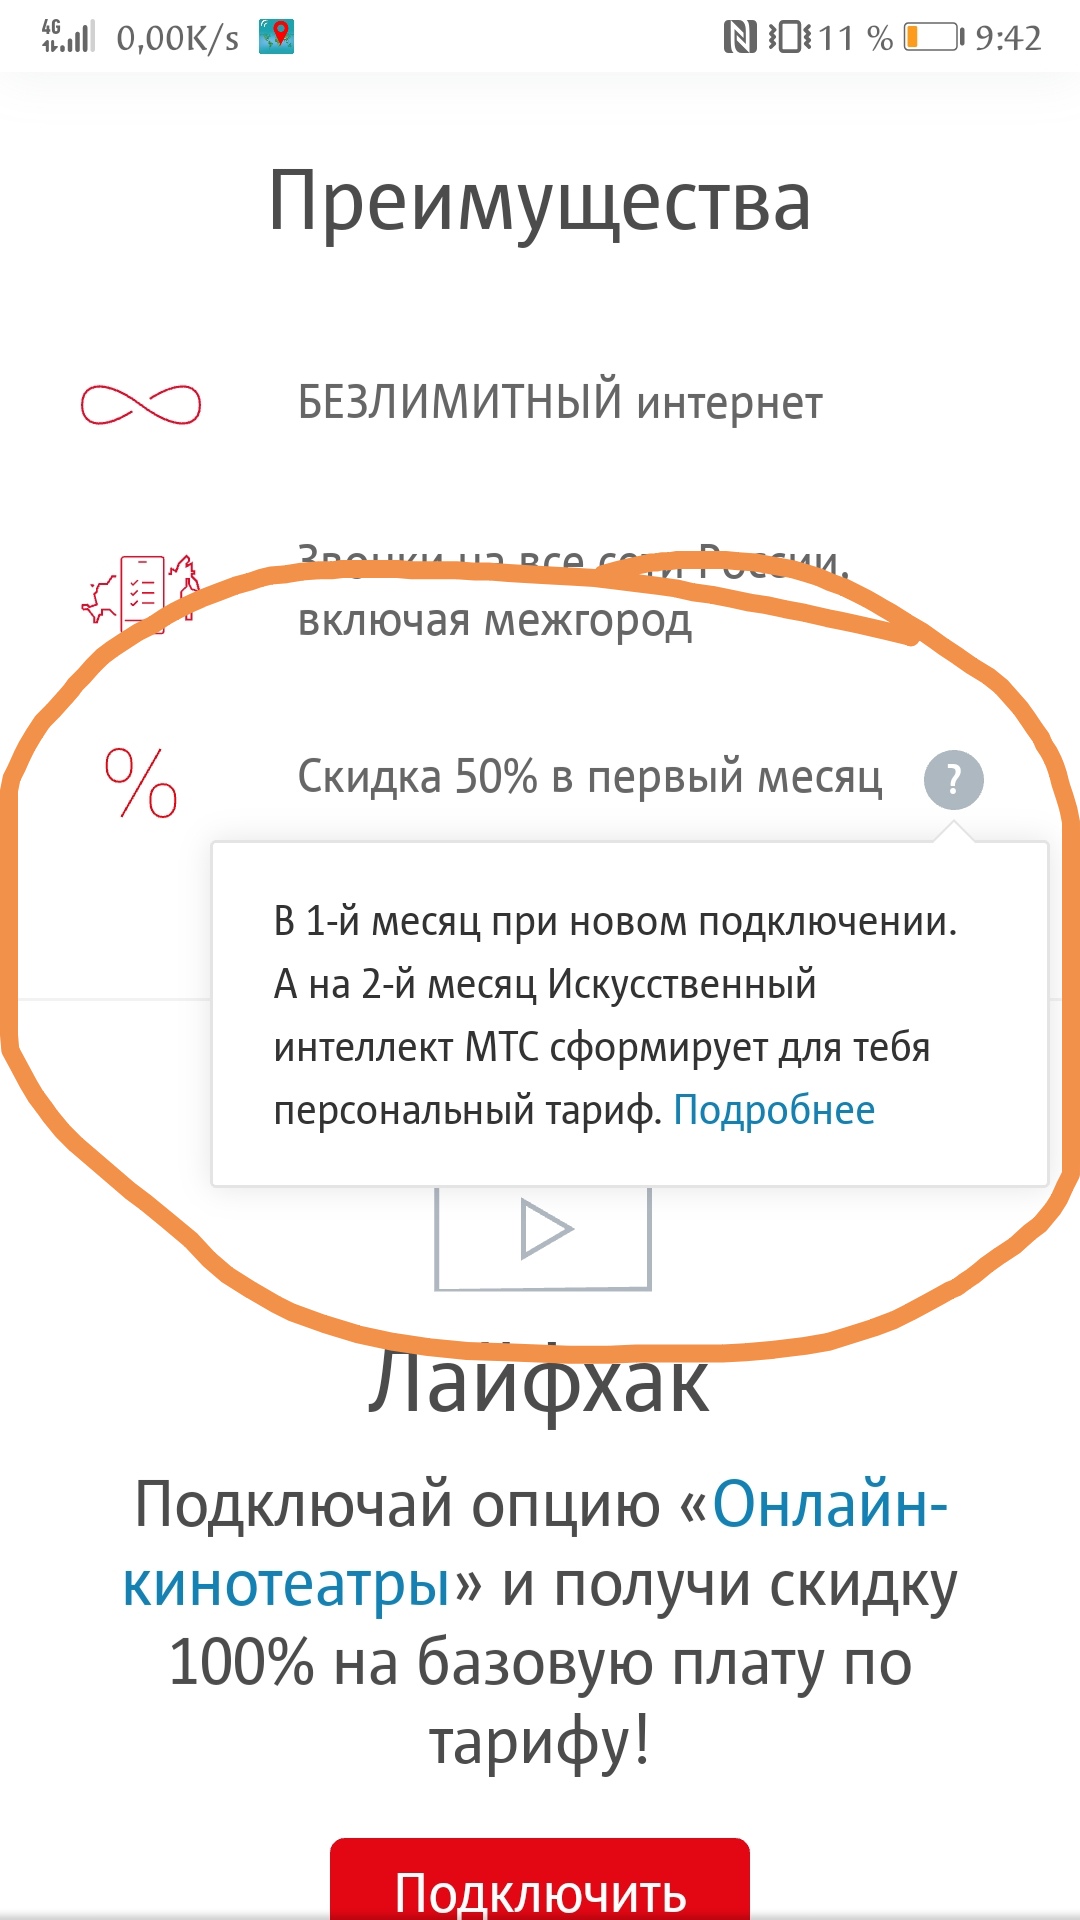 Саяногорск Инфо - screenshot_20200104_094309.jpg, Скачано: 447